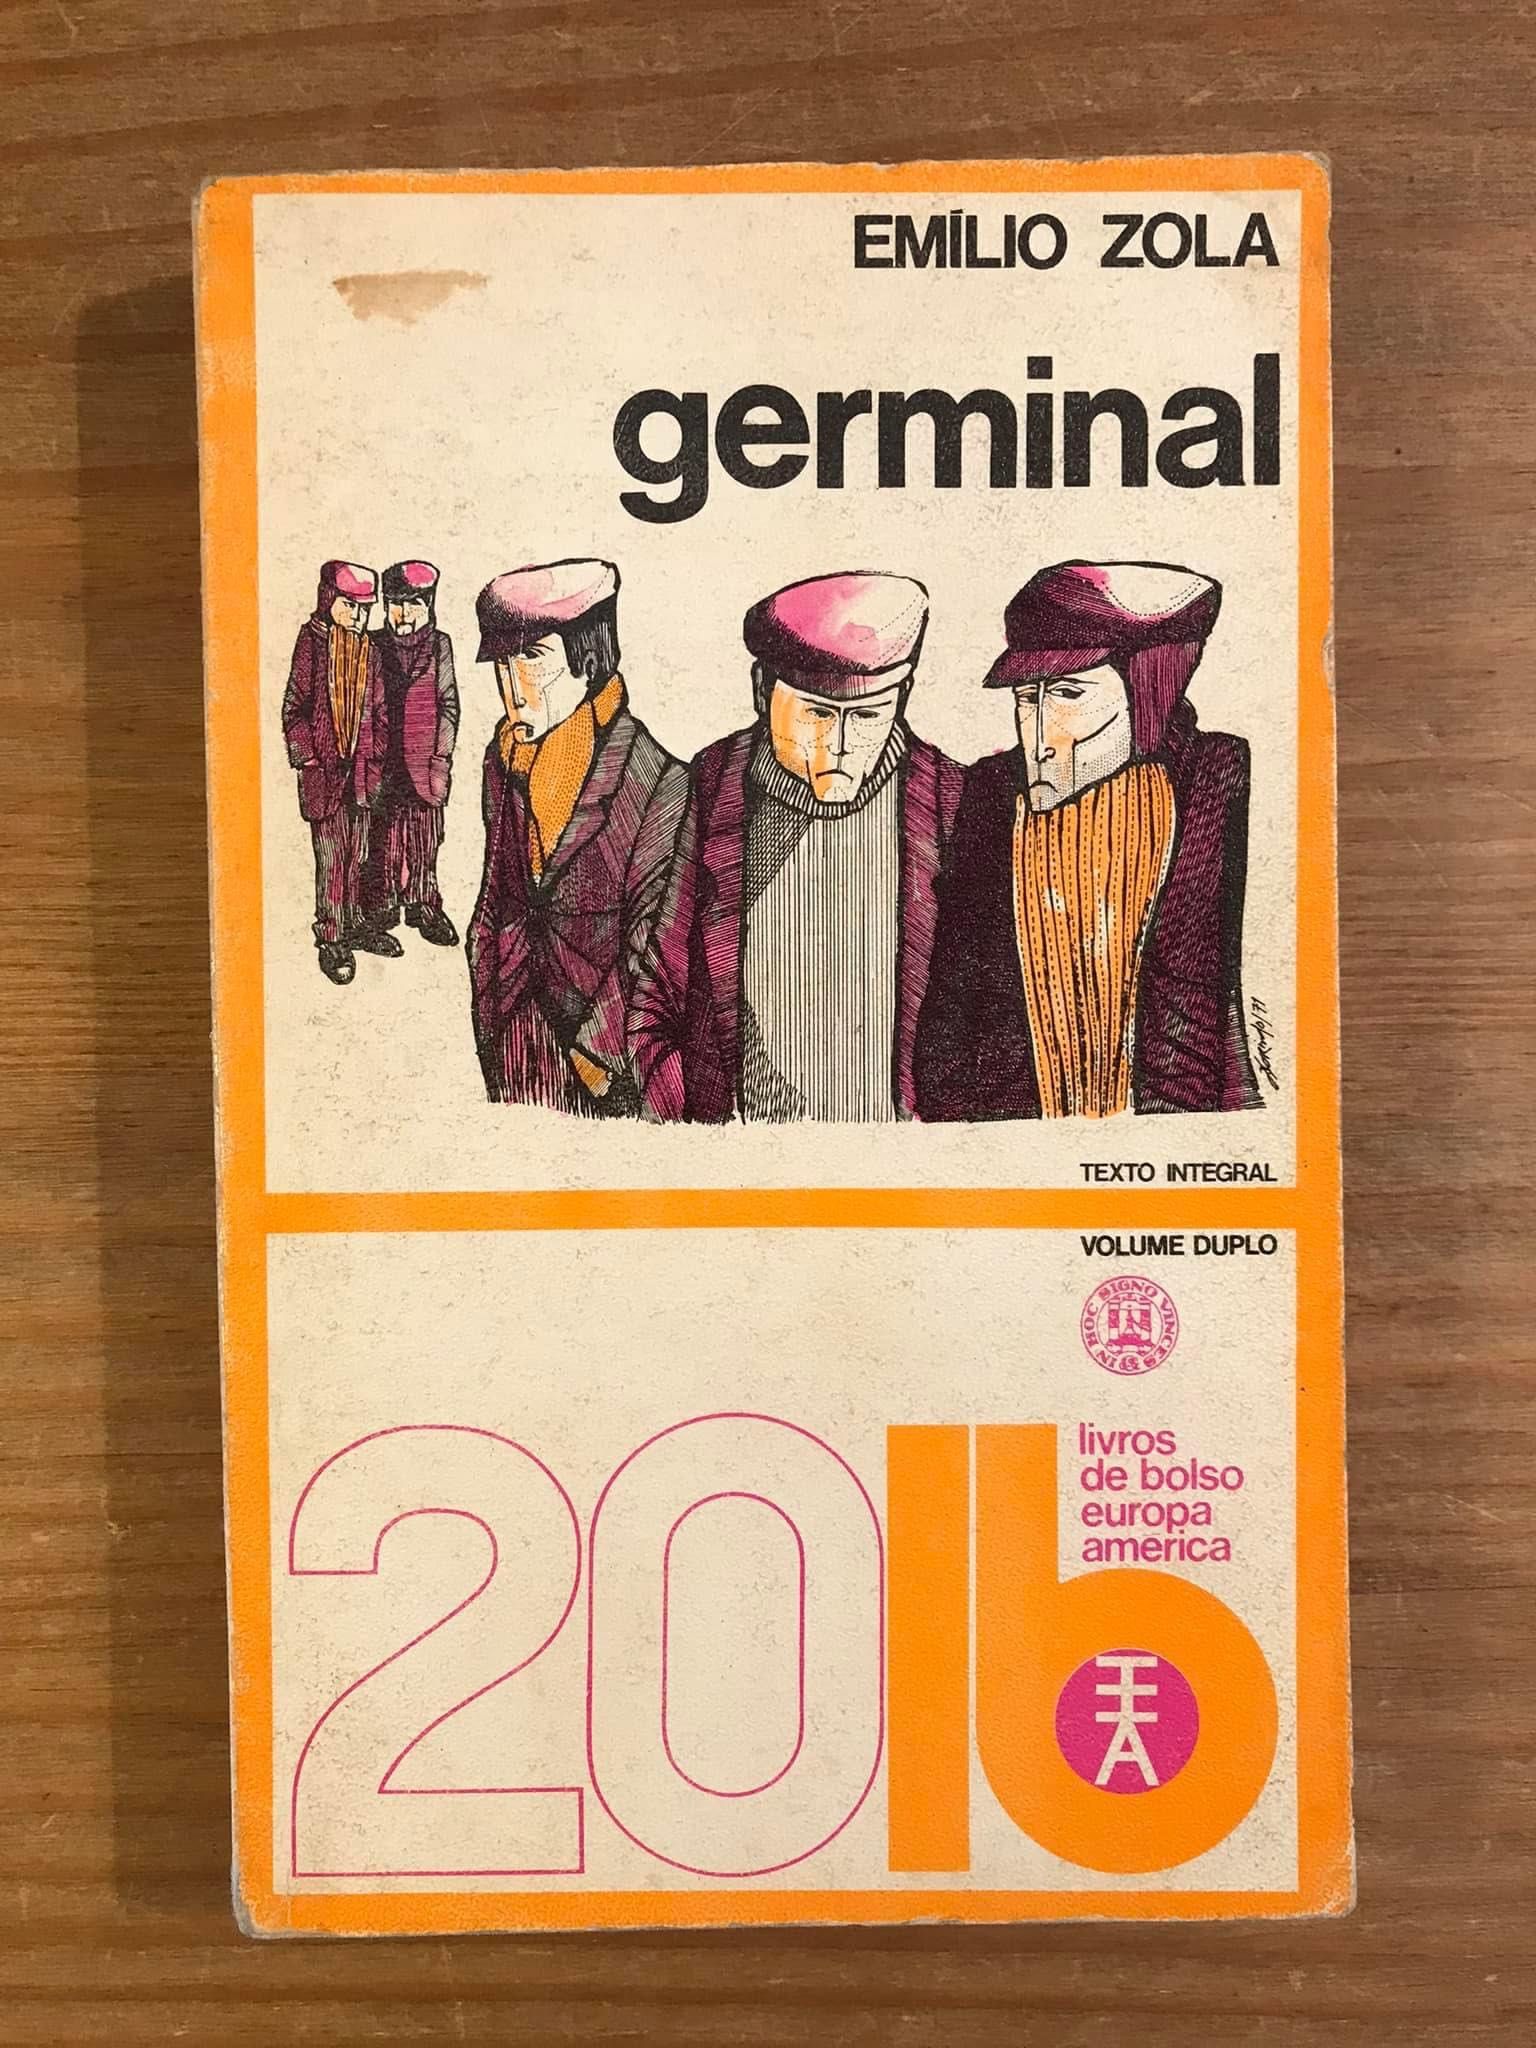 Germinal - Emile Zola (portes grátis)